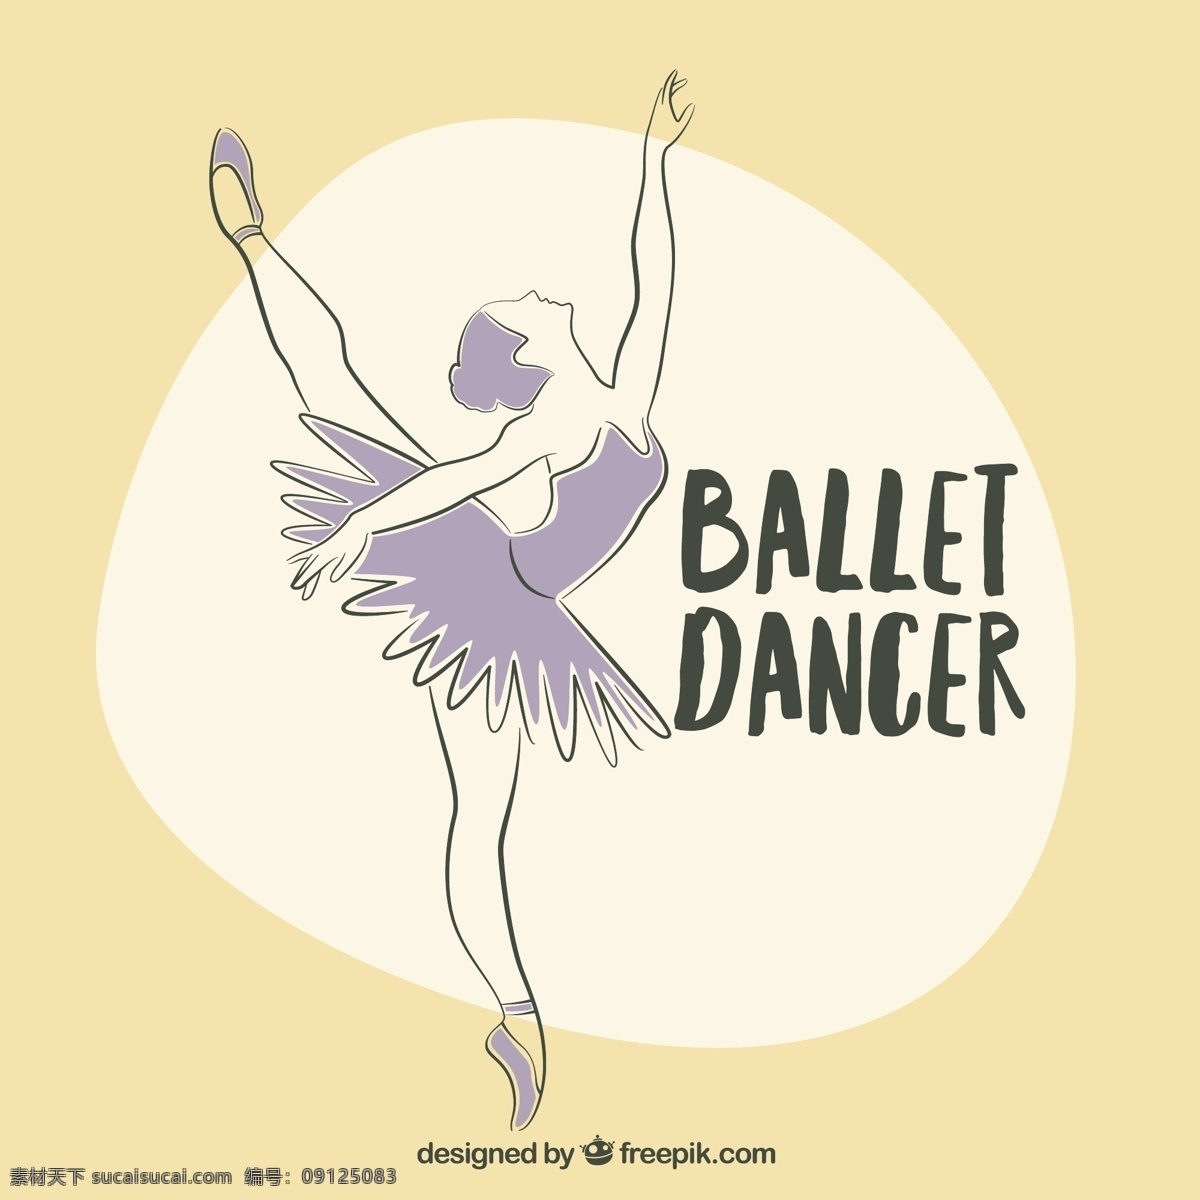 芭蕾舞蹈家 手工 舞蹈 手 画 颜色 款式 紫 绘画 涂鸦 芭蕾 舞蹈家 艺术家 芭蕾舞 拉 移动 运动 艺术 素描 手绘 跳舞 女孩手工绘制